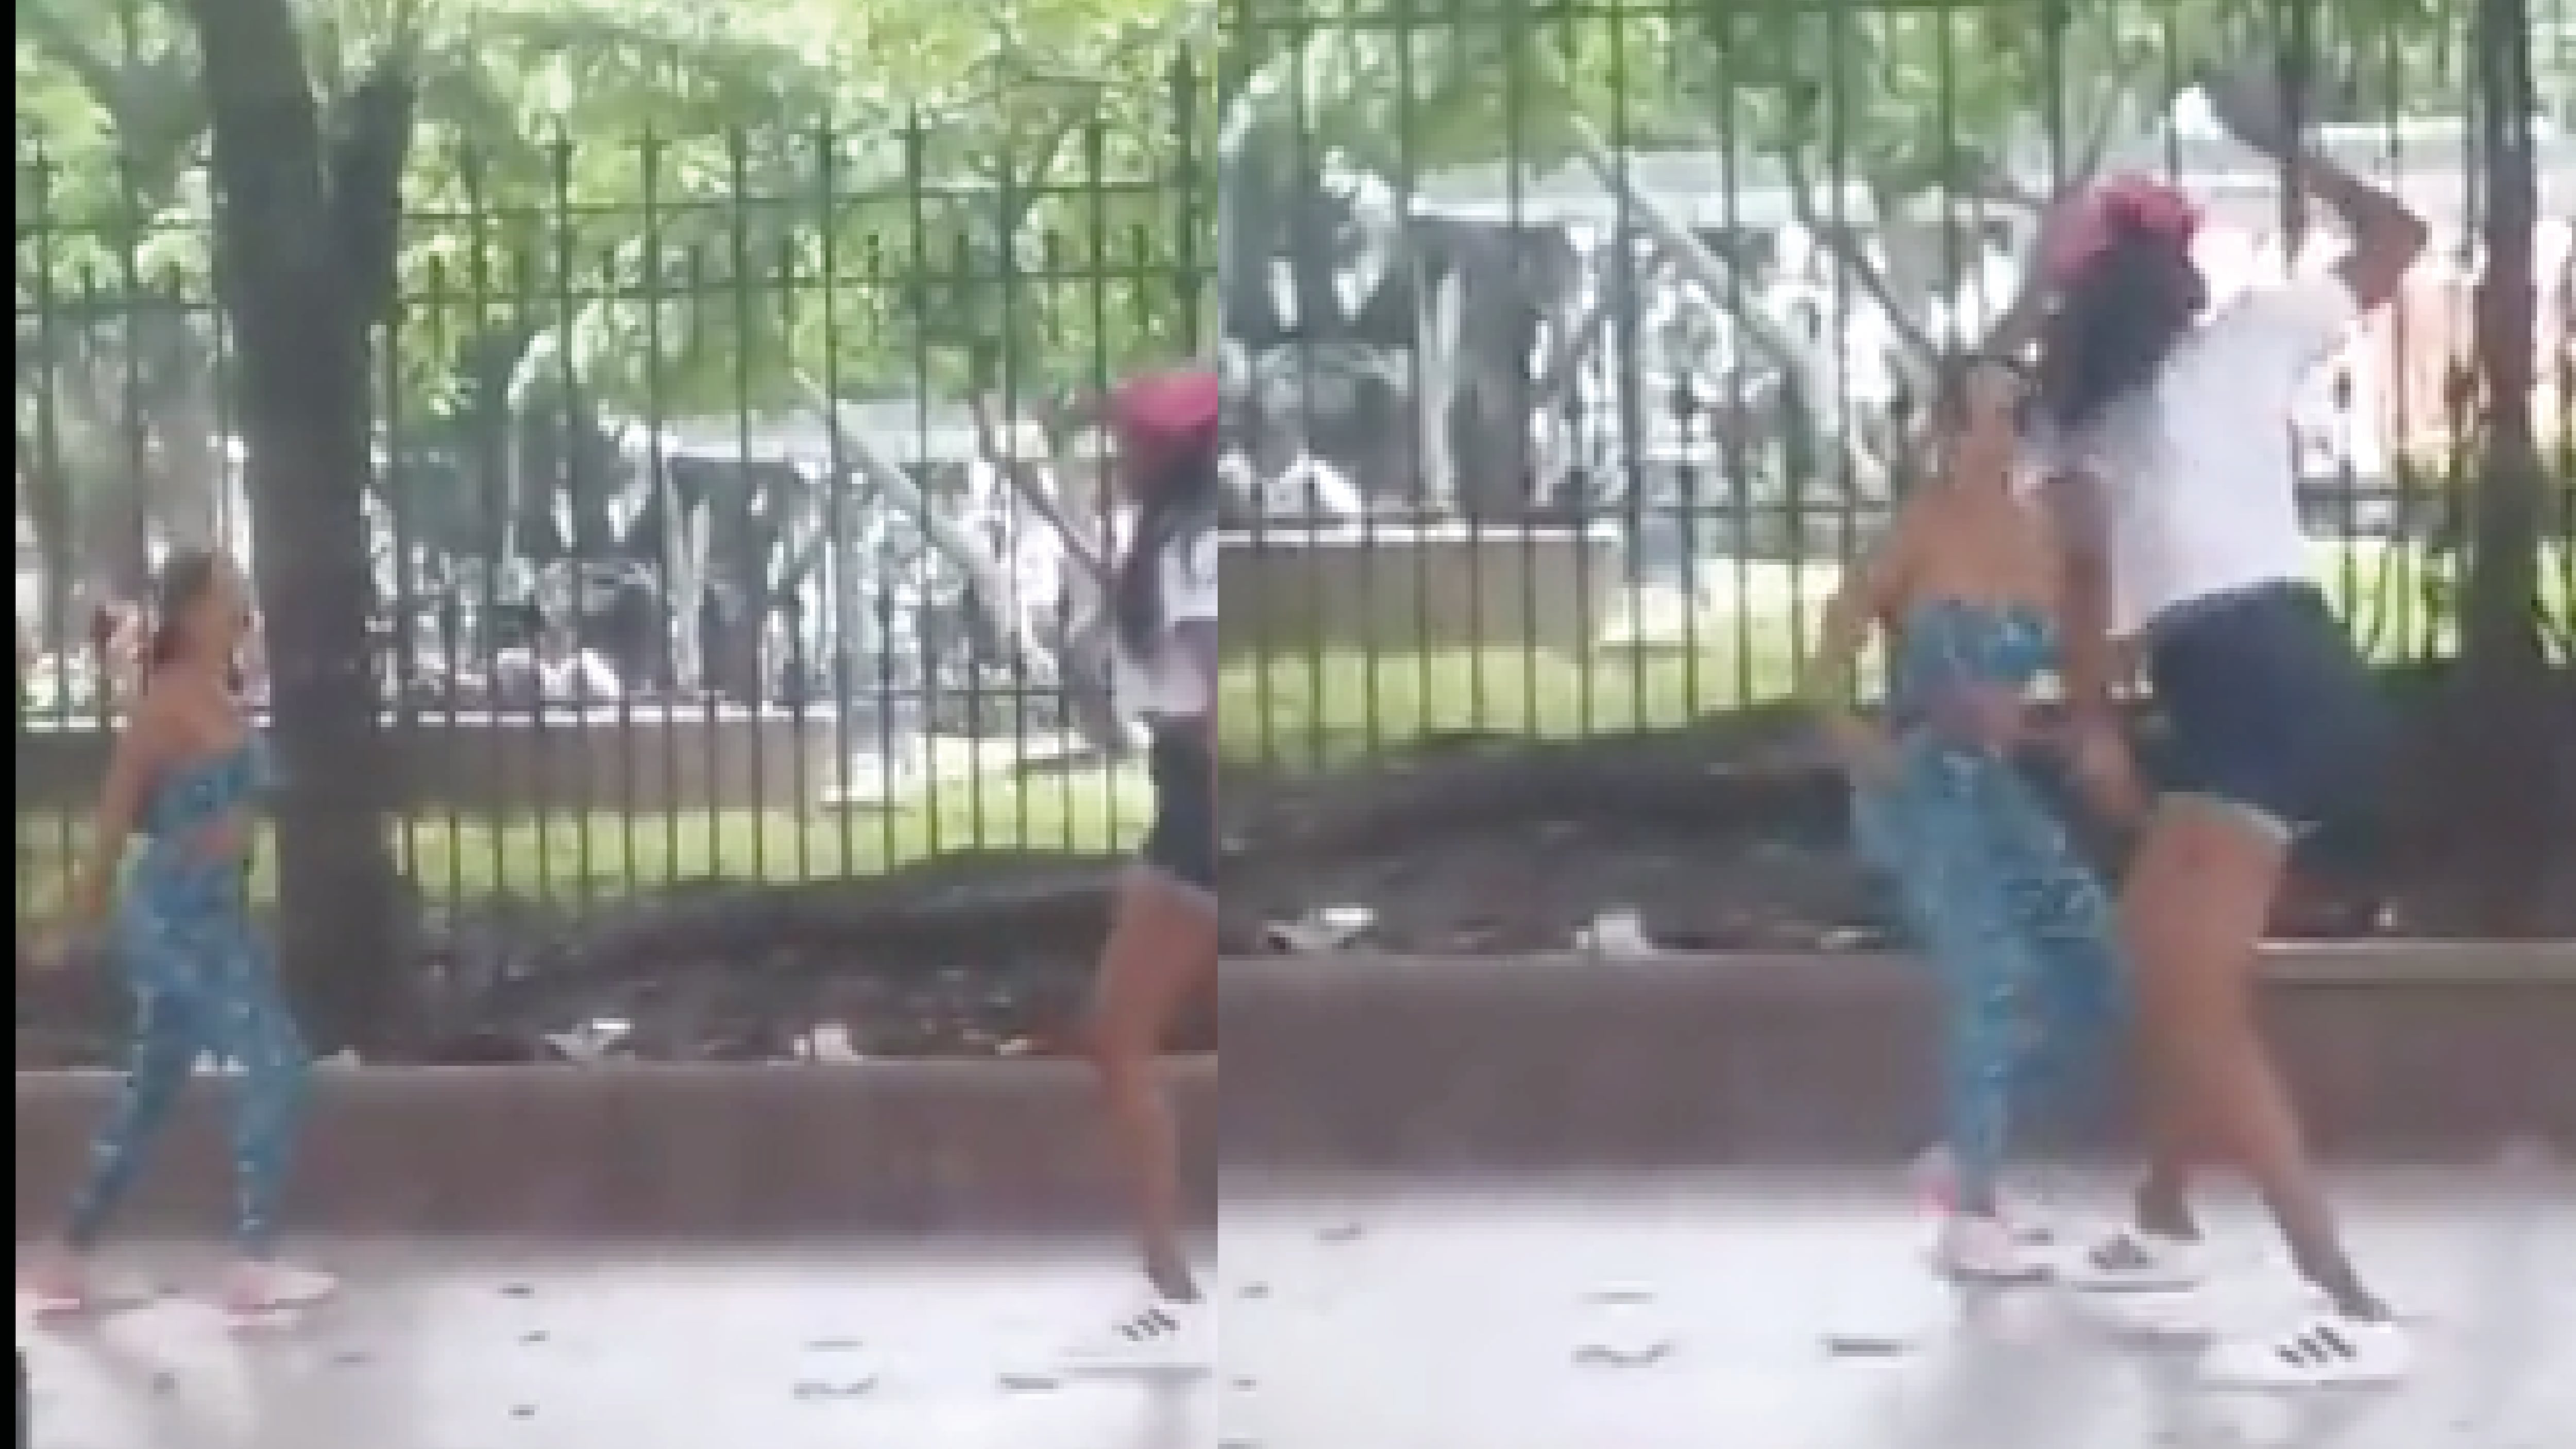 Dos mujeres se enfrentaron con cuchillo en los exteriores del parque Centenario, Guayaquil